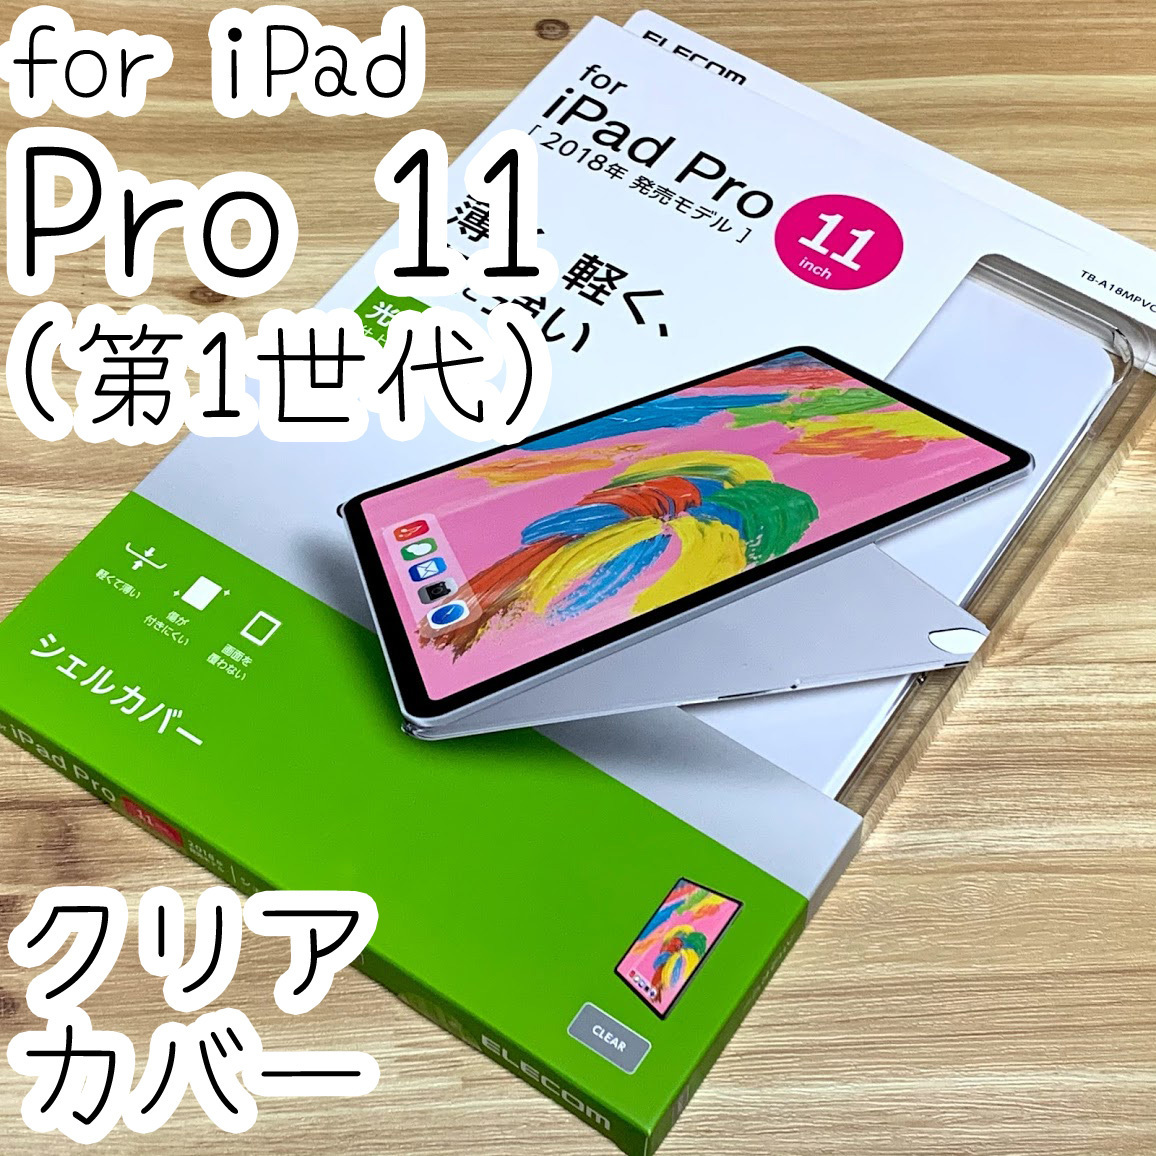 エレコム iPad Pro 11 (2018) ケース クリア シェルカバー ハード 第1世代 ポリカーボネート製 薄型 11インチ 736 匿名